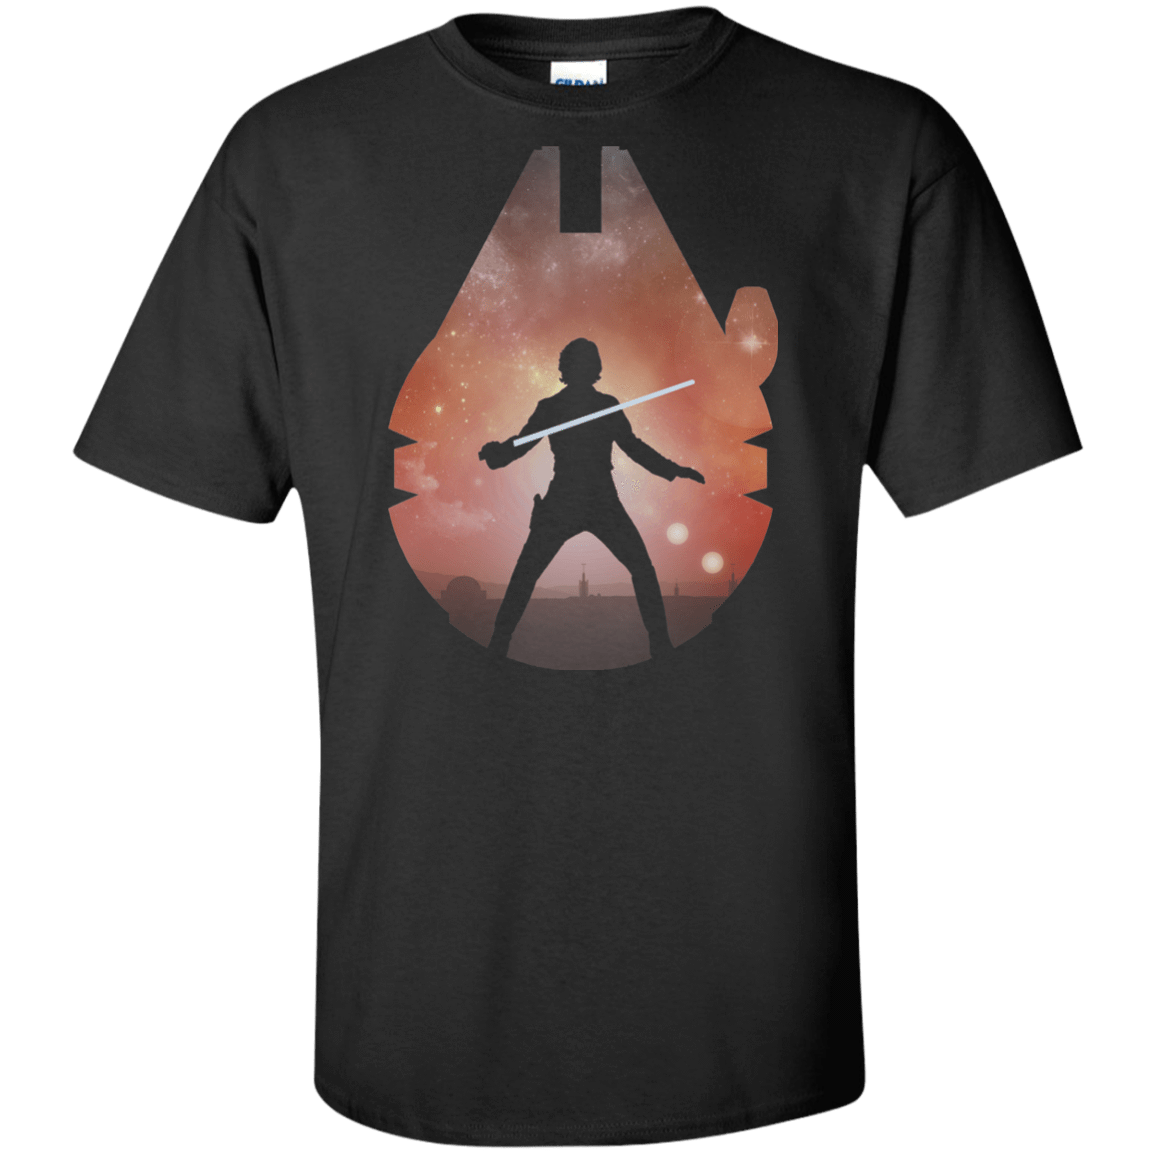 T-Shirts Black / XLT The Jedi Tall T-Shirt